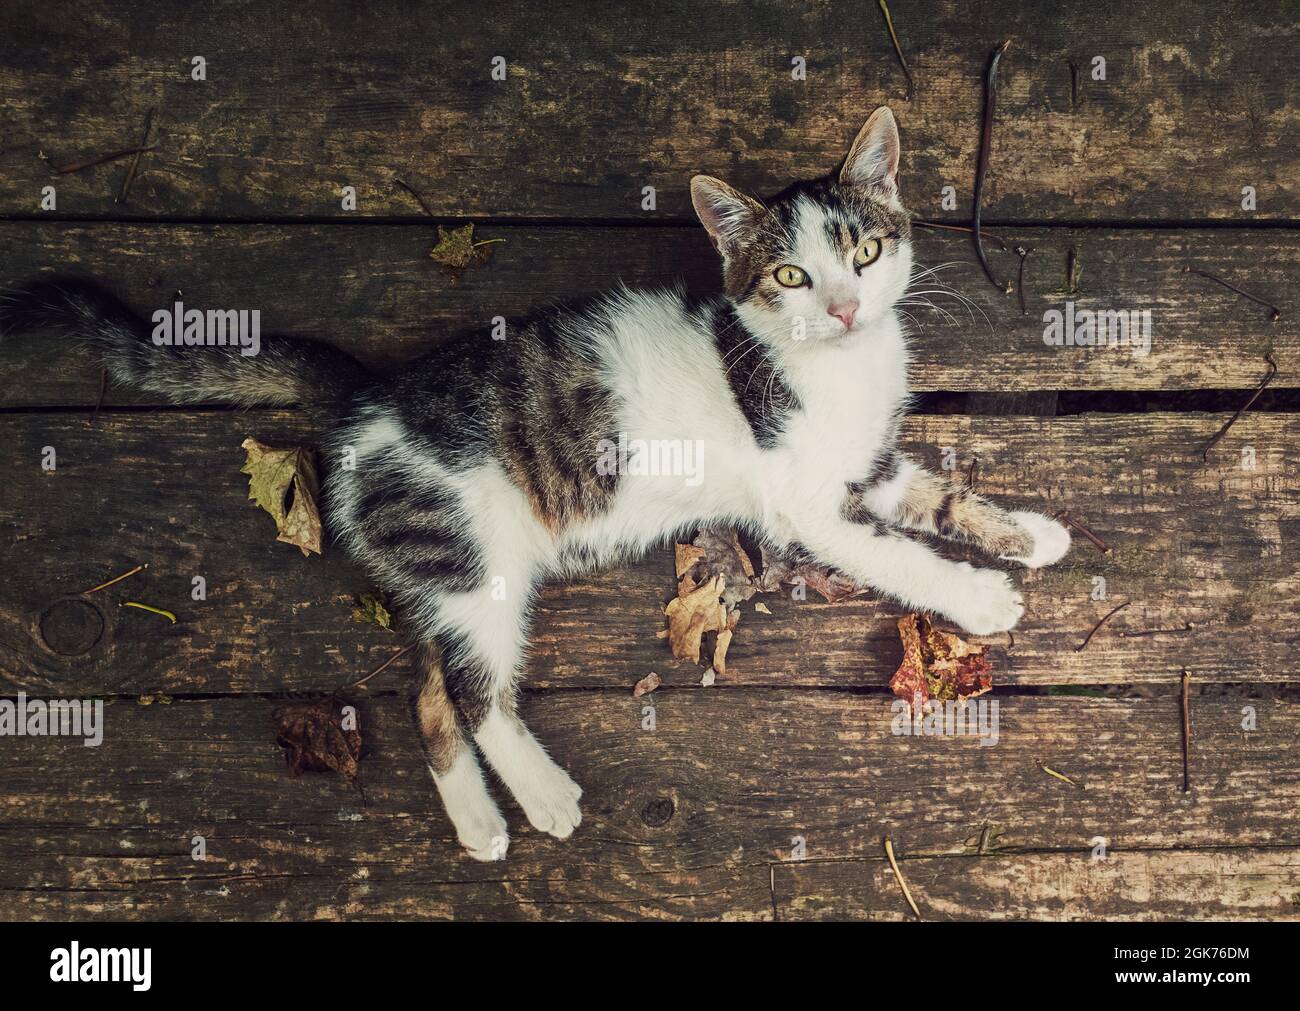 Vue de haut en bas d'un chat allongé sur une table rustique en bois entourée de feuilles sèches. Arrière-plan de la saison d'automne avec chaton sur le vieux panneau de bois regardant Banque D'Images